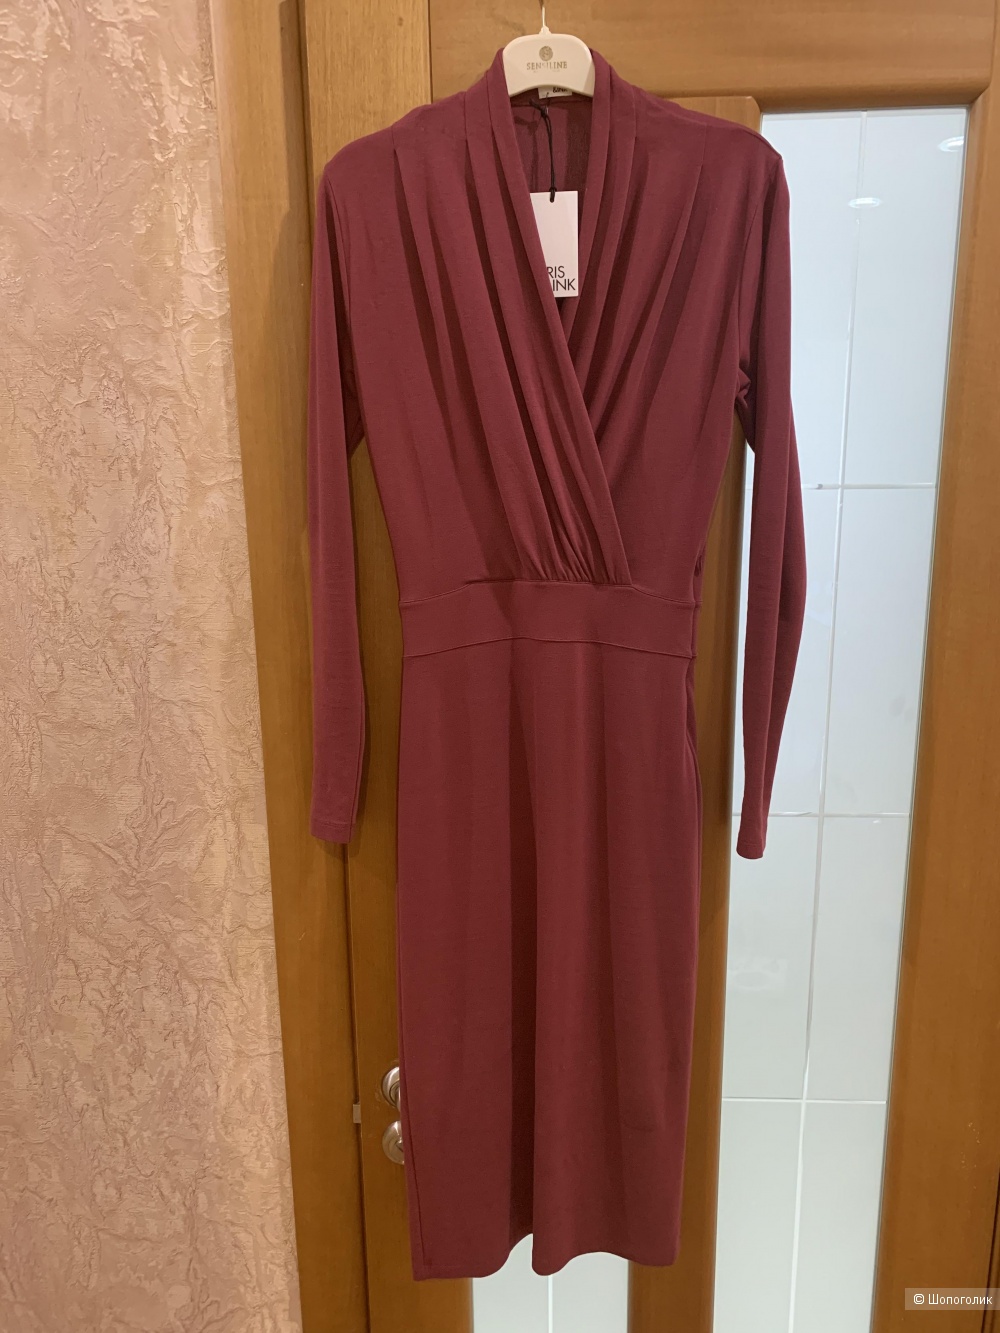 Платье Iris&Ink, размер XS, 40-42 рус.